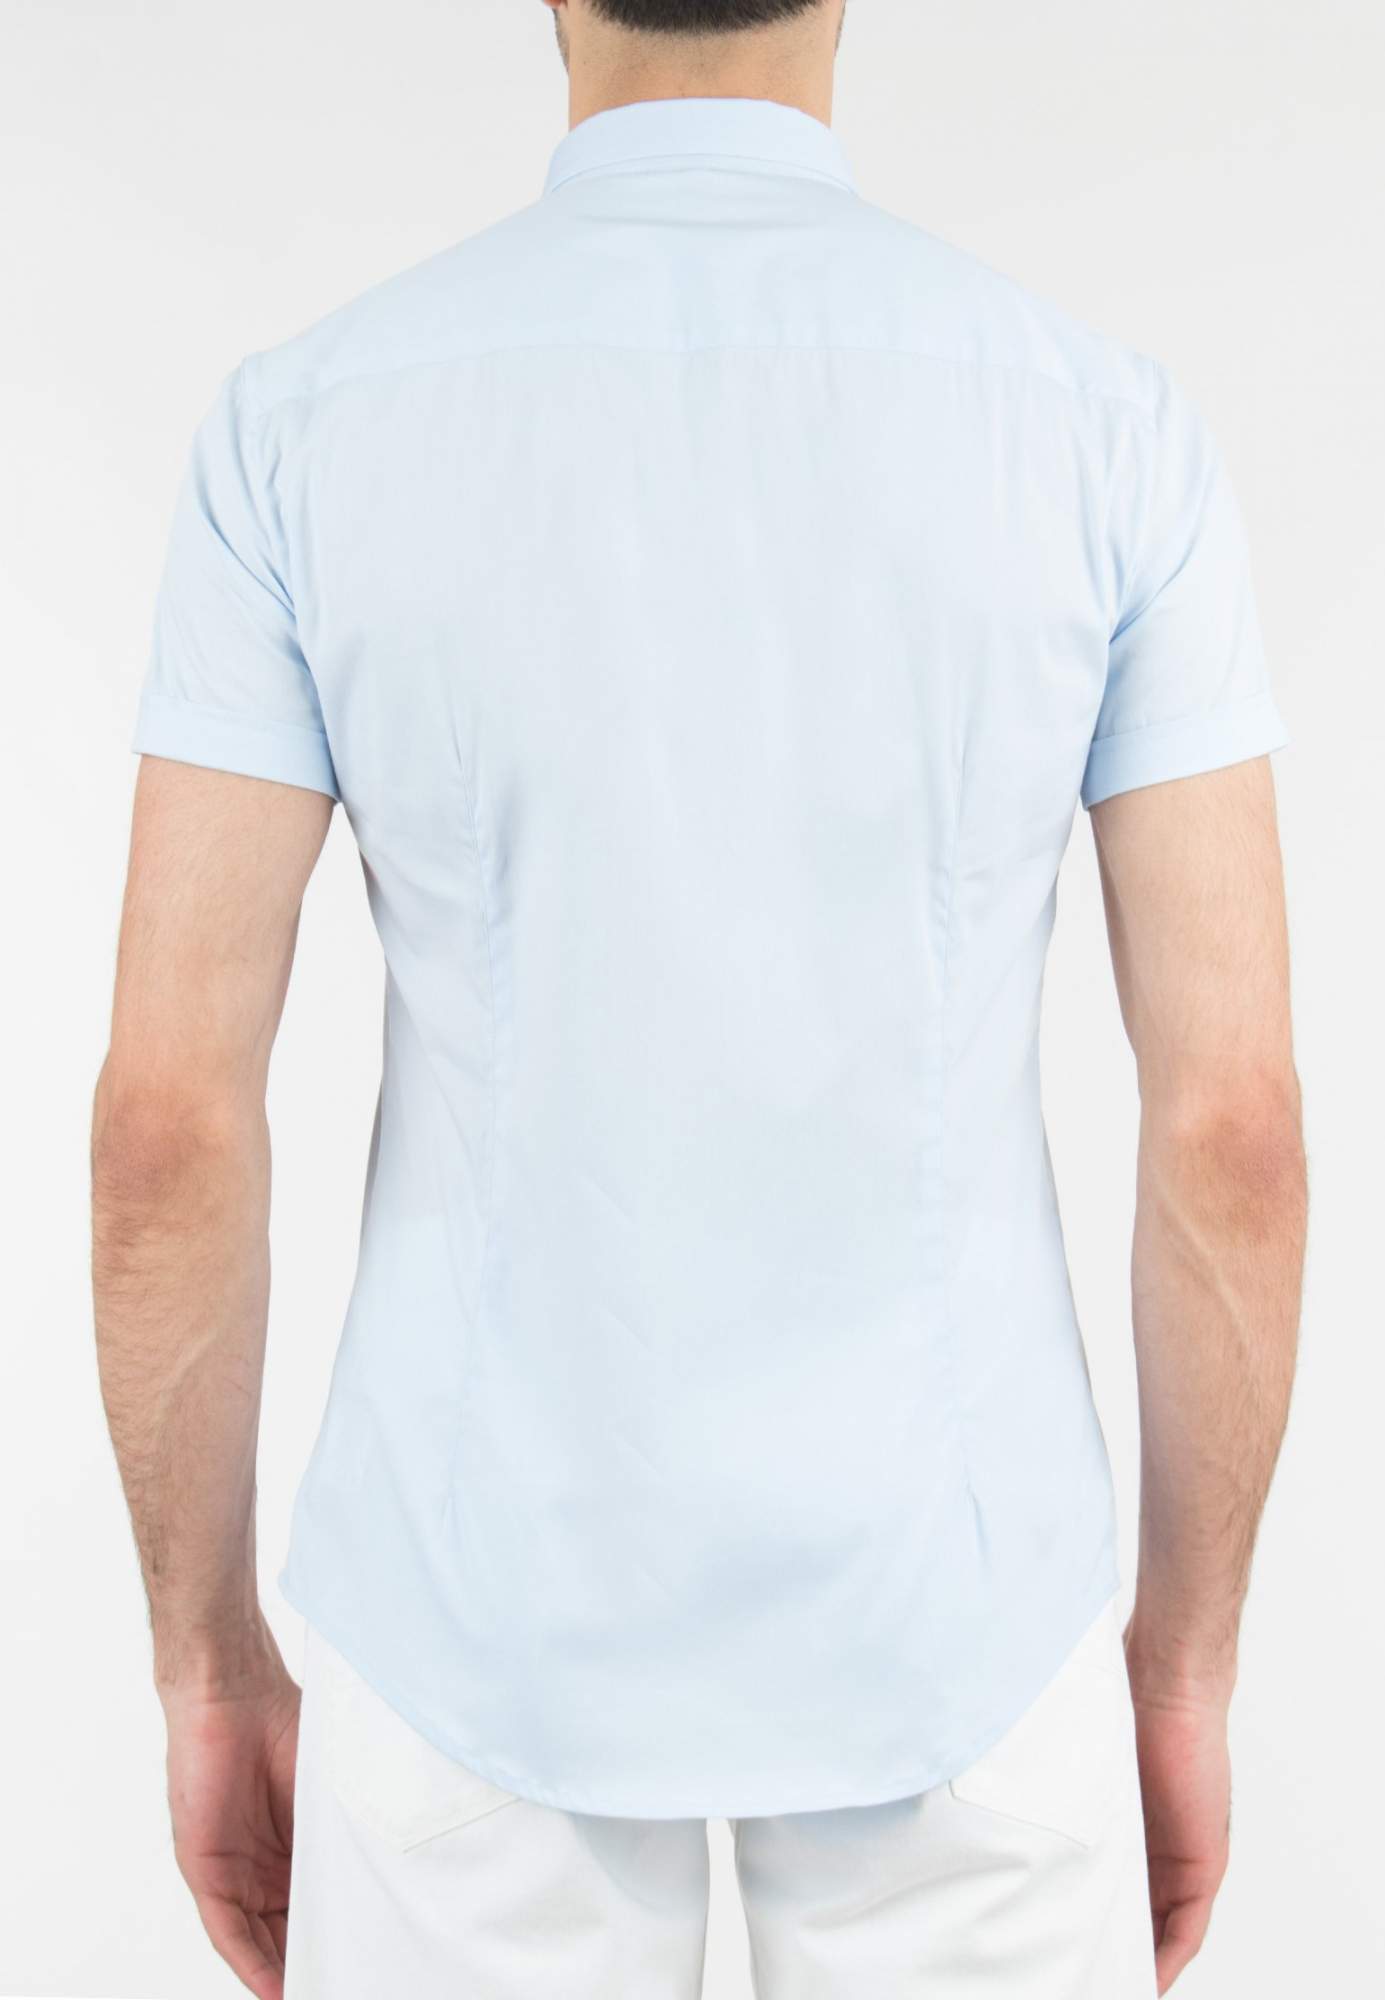 Рубашка мужская Emporio Armani 116835 голубая L